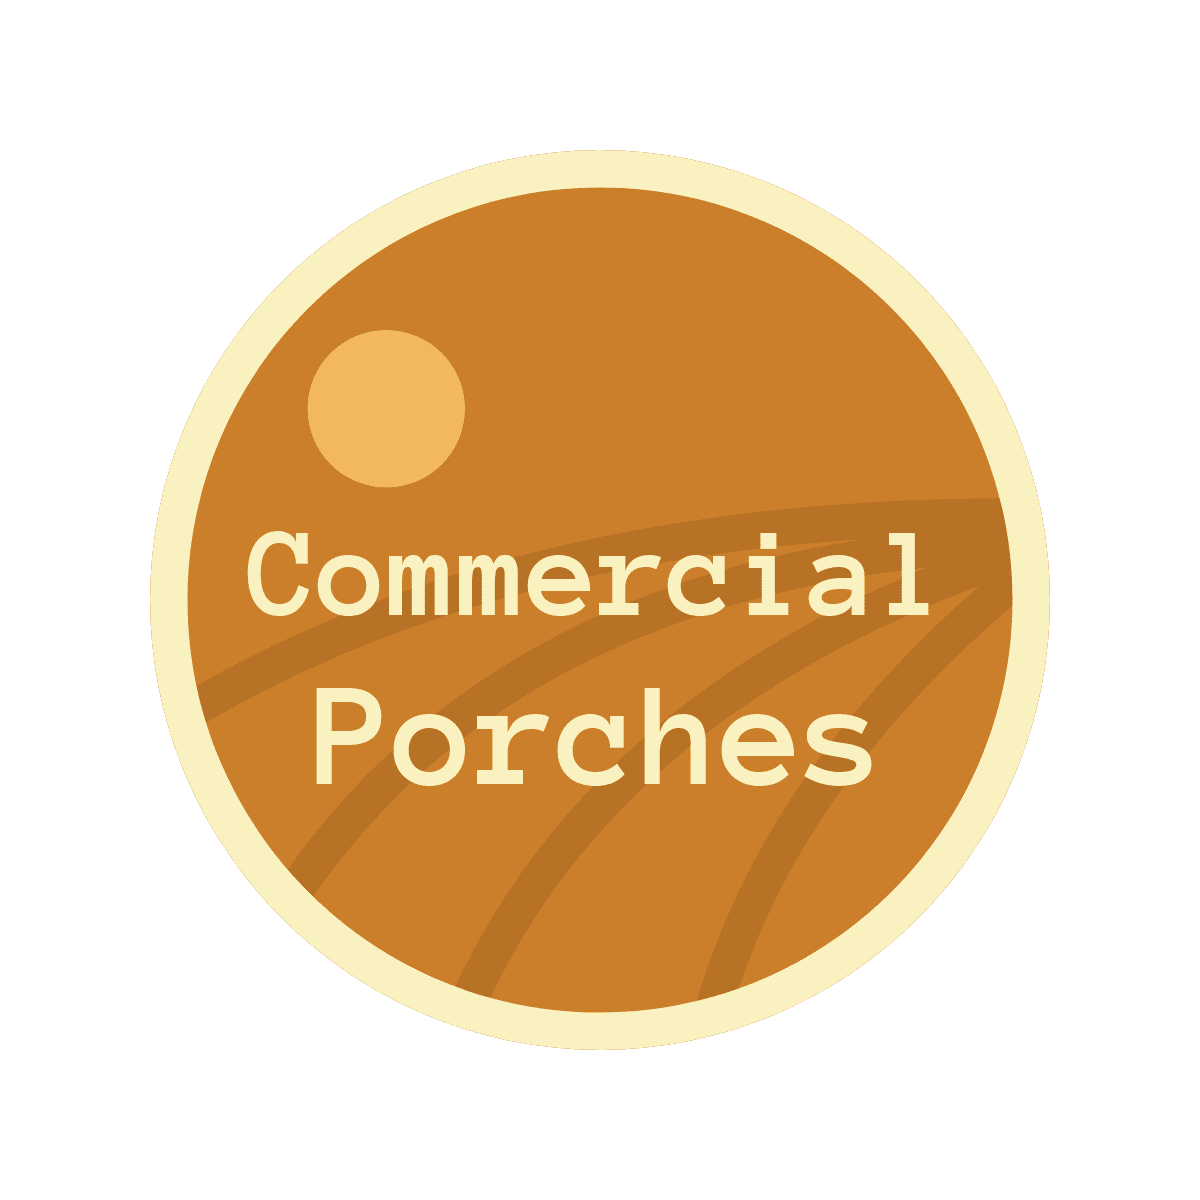 Commercial Porches